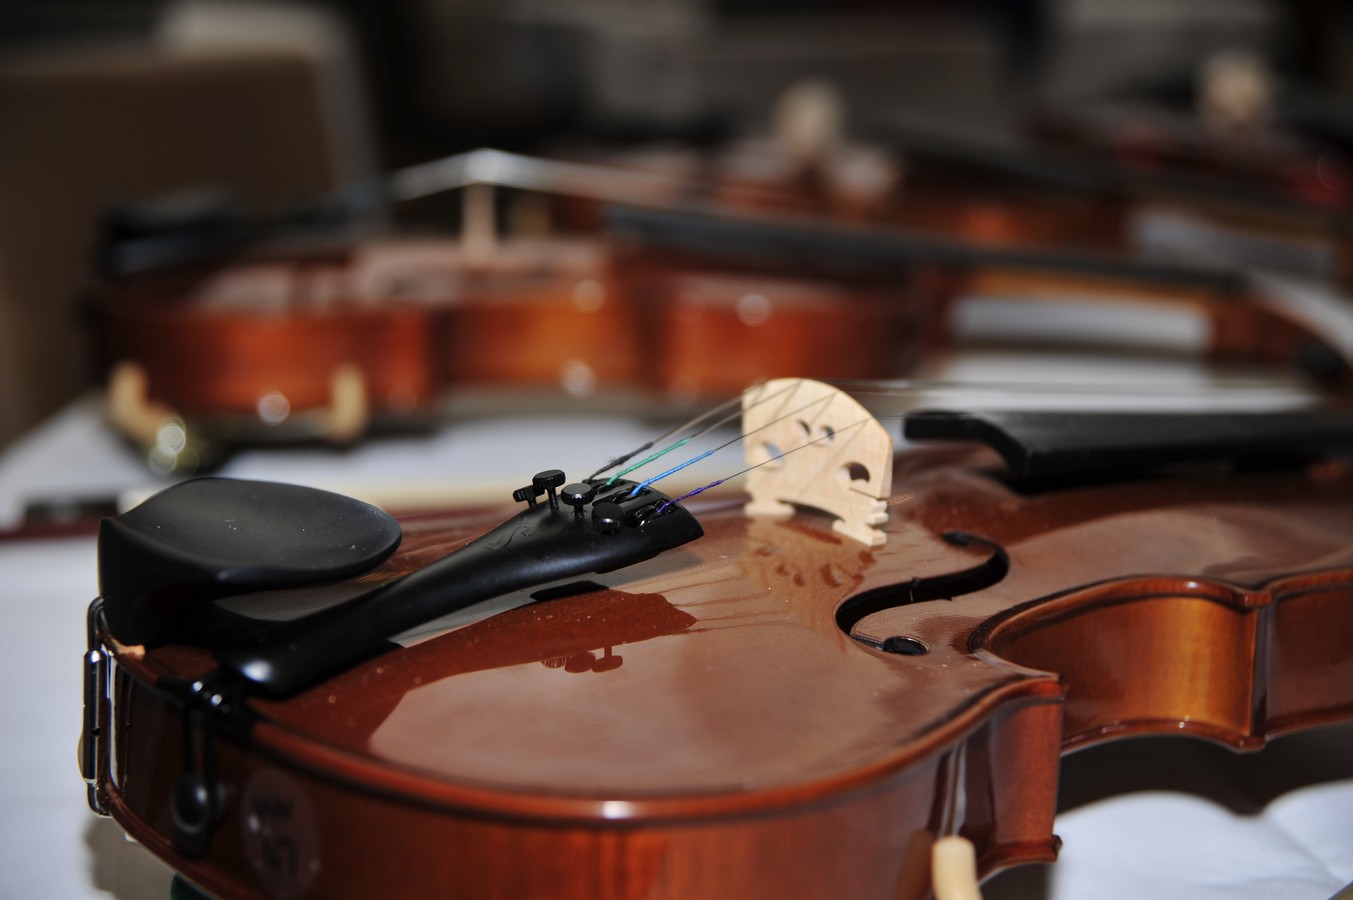 Približana fotografija violine